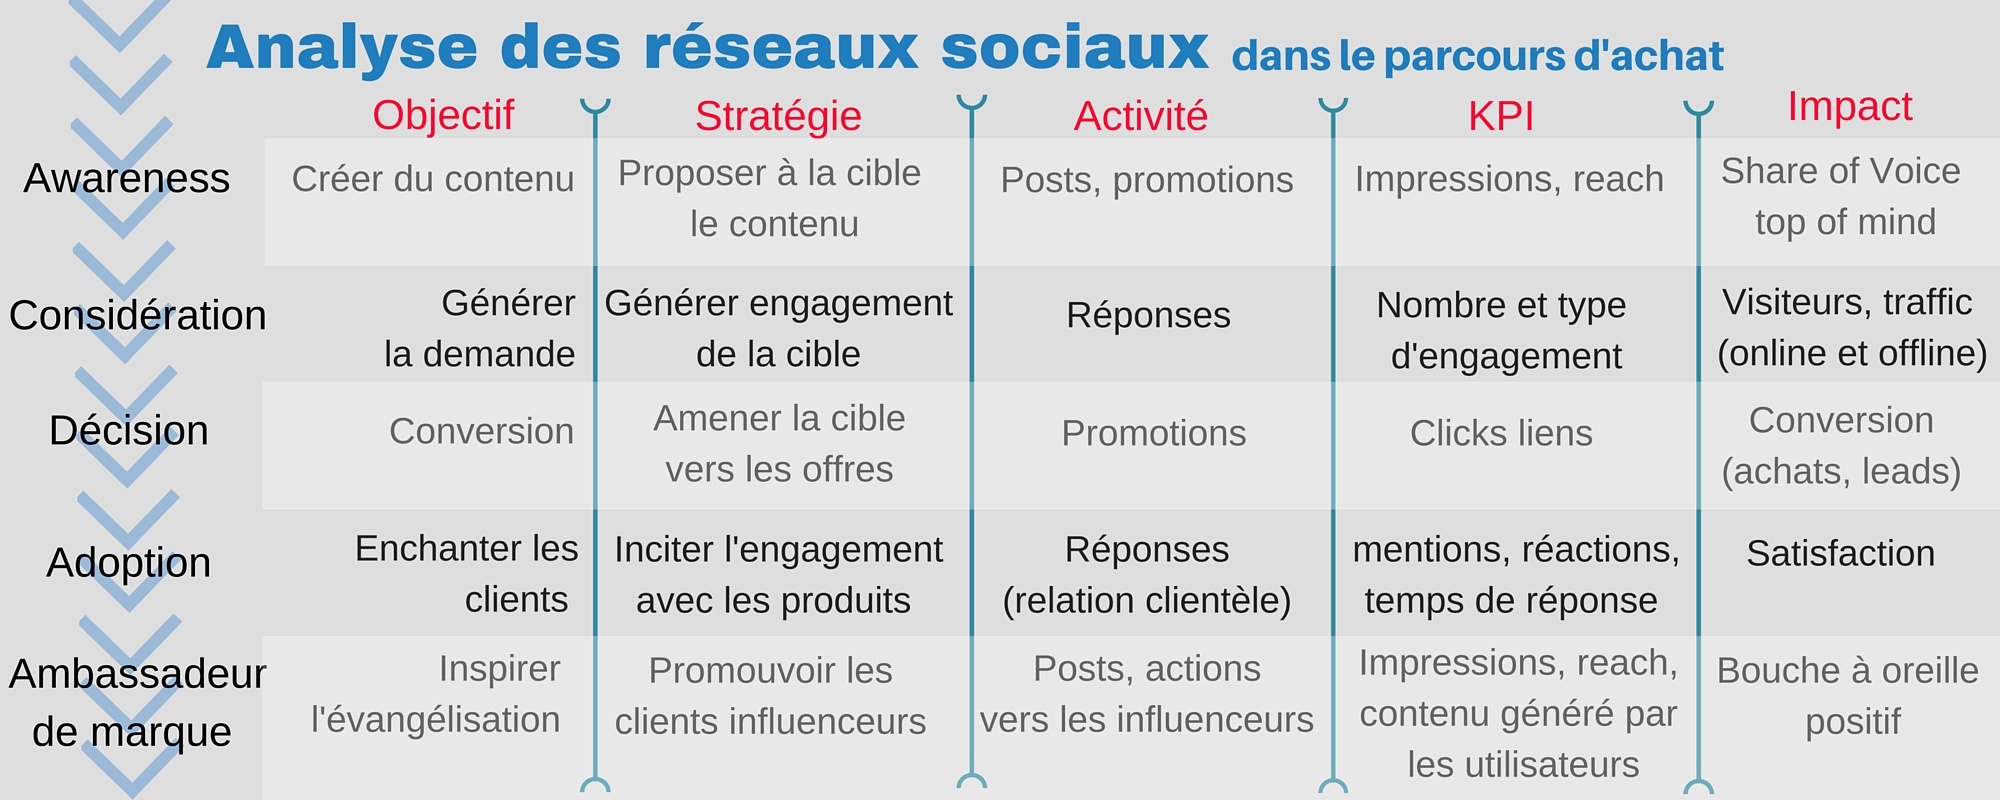 Analyse_des_rseaux_sociaux_-_parcours_dachat.jpg